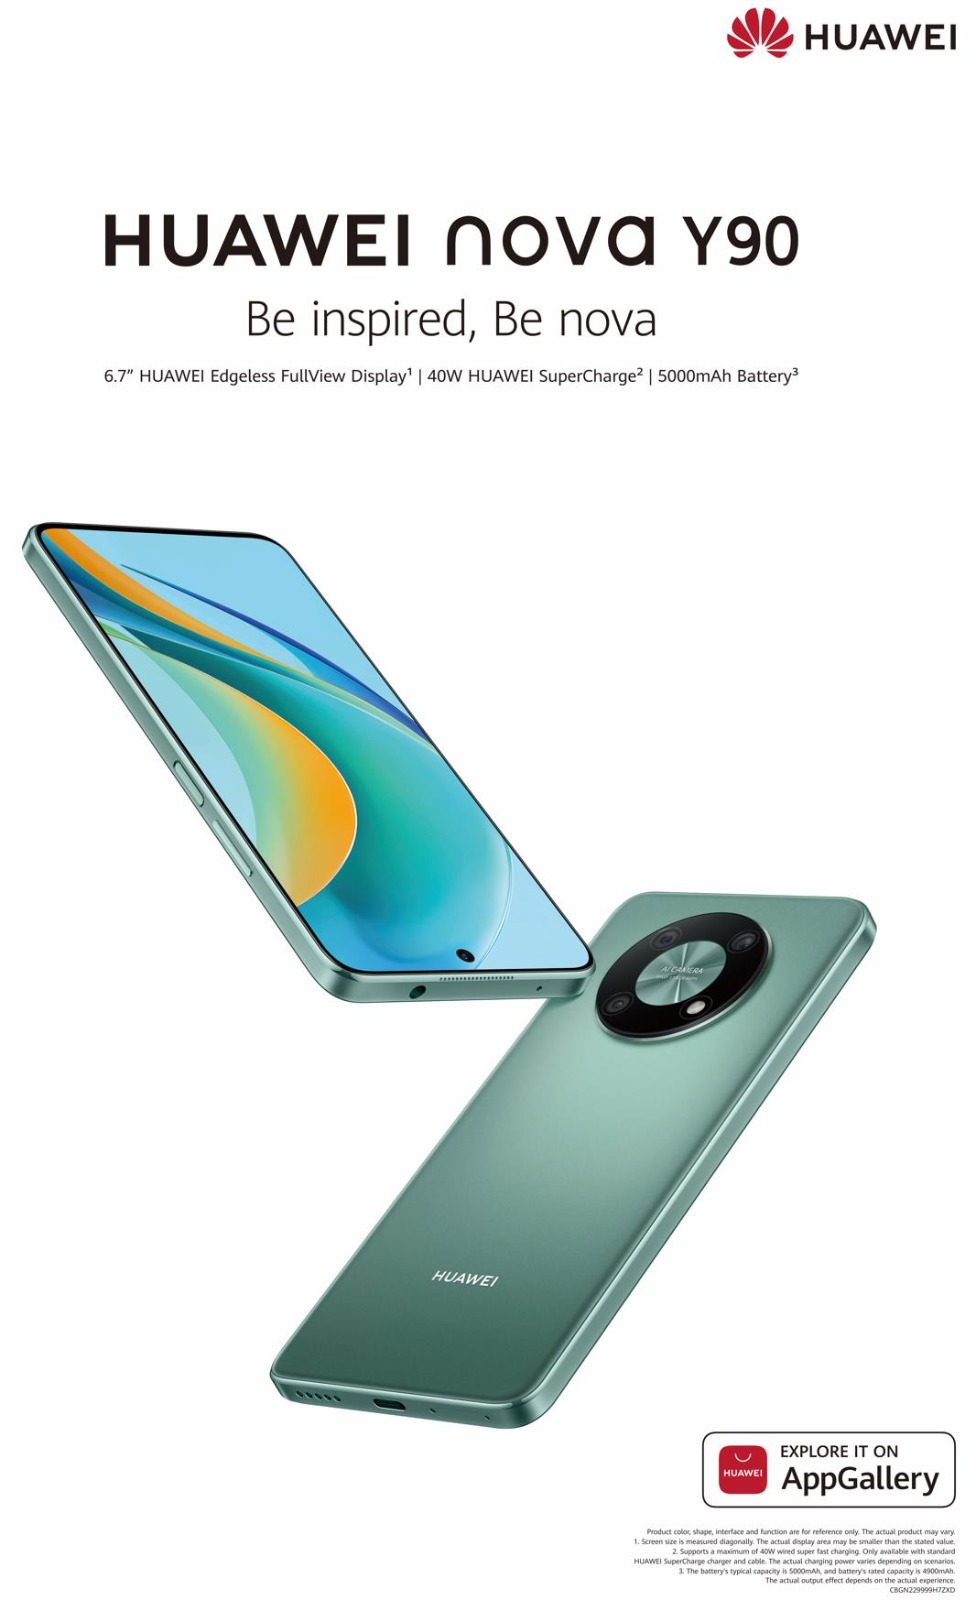 خمسة أسباب تجعلنا نحب هاتف huawei nova y90 الجديد، القوي ذو الشاشة الضخمة